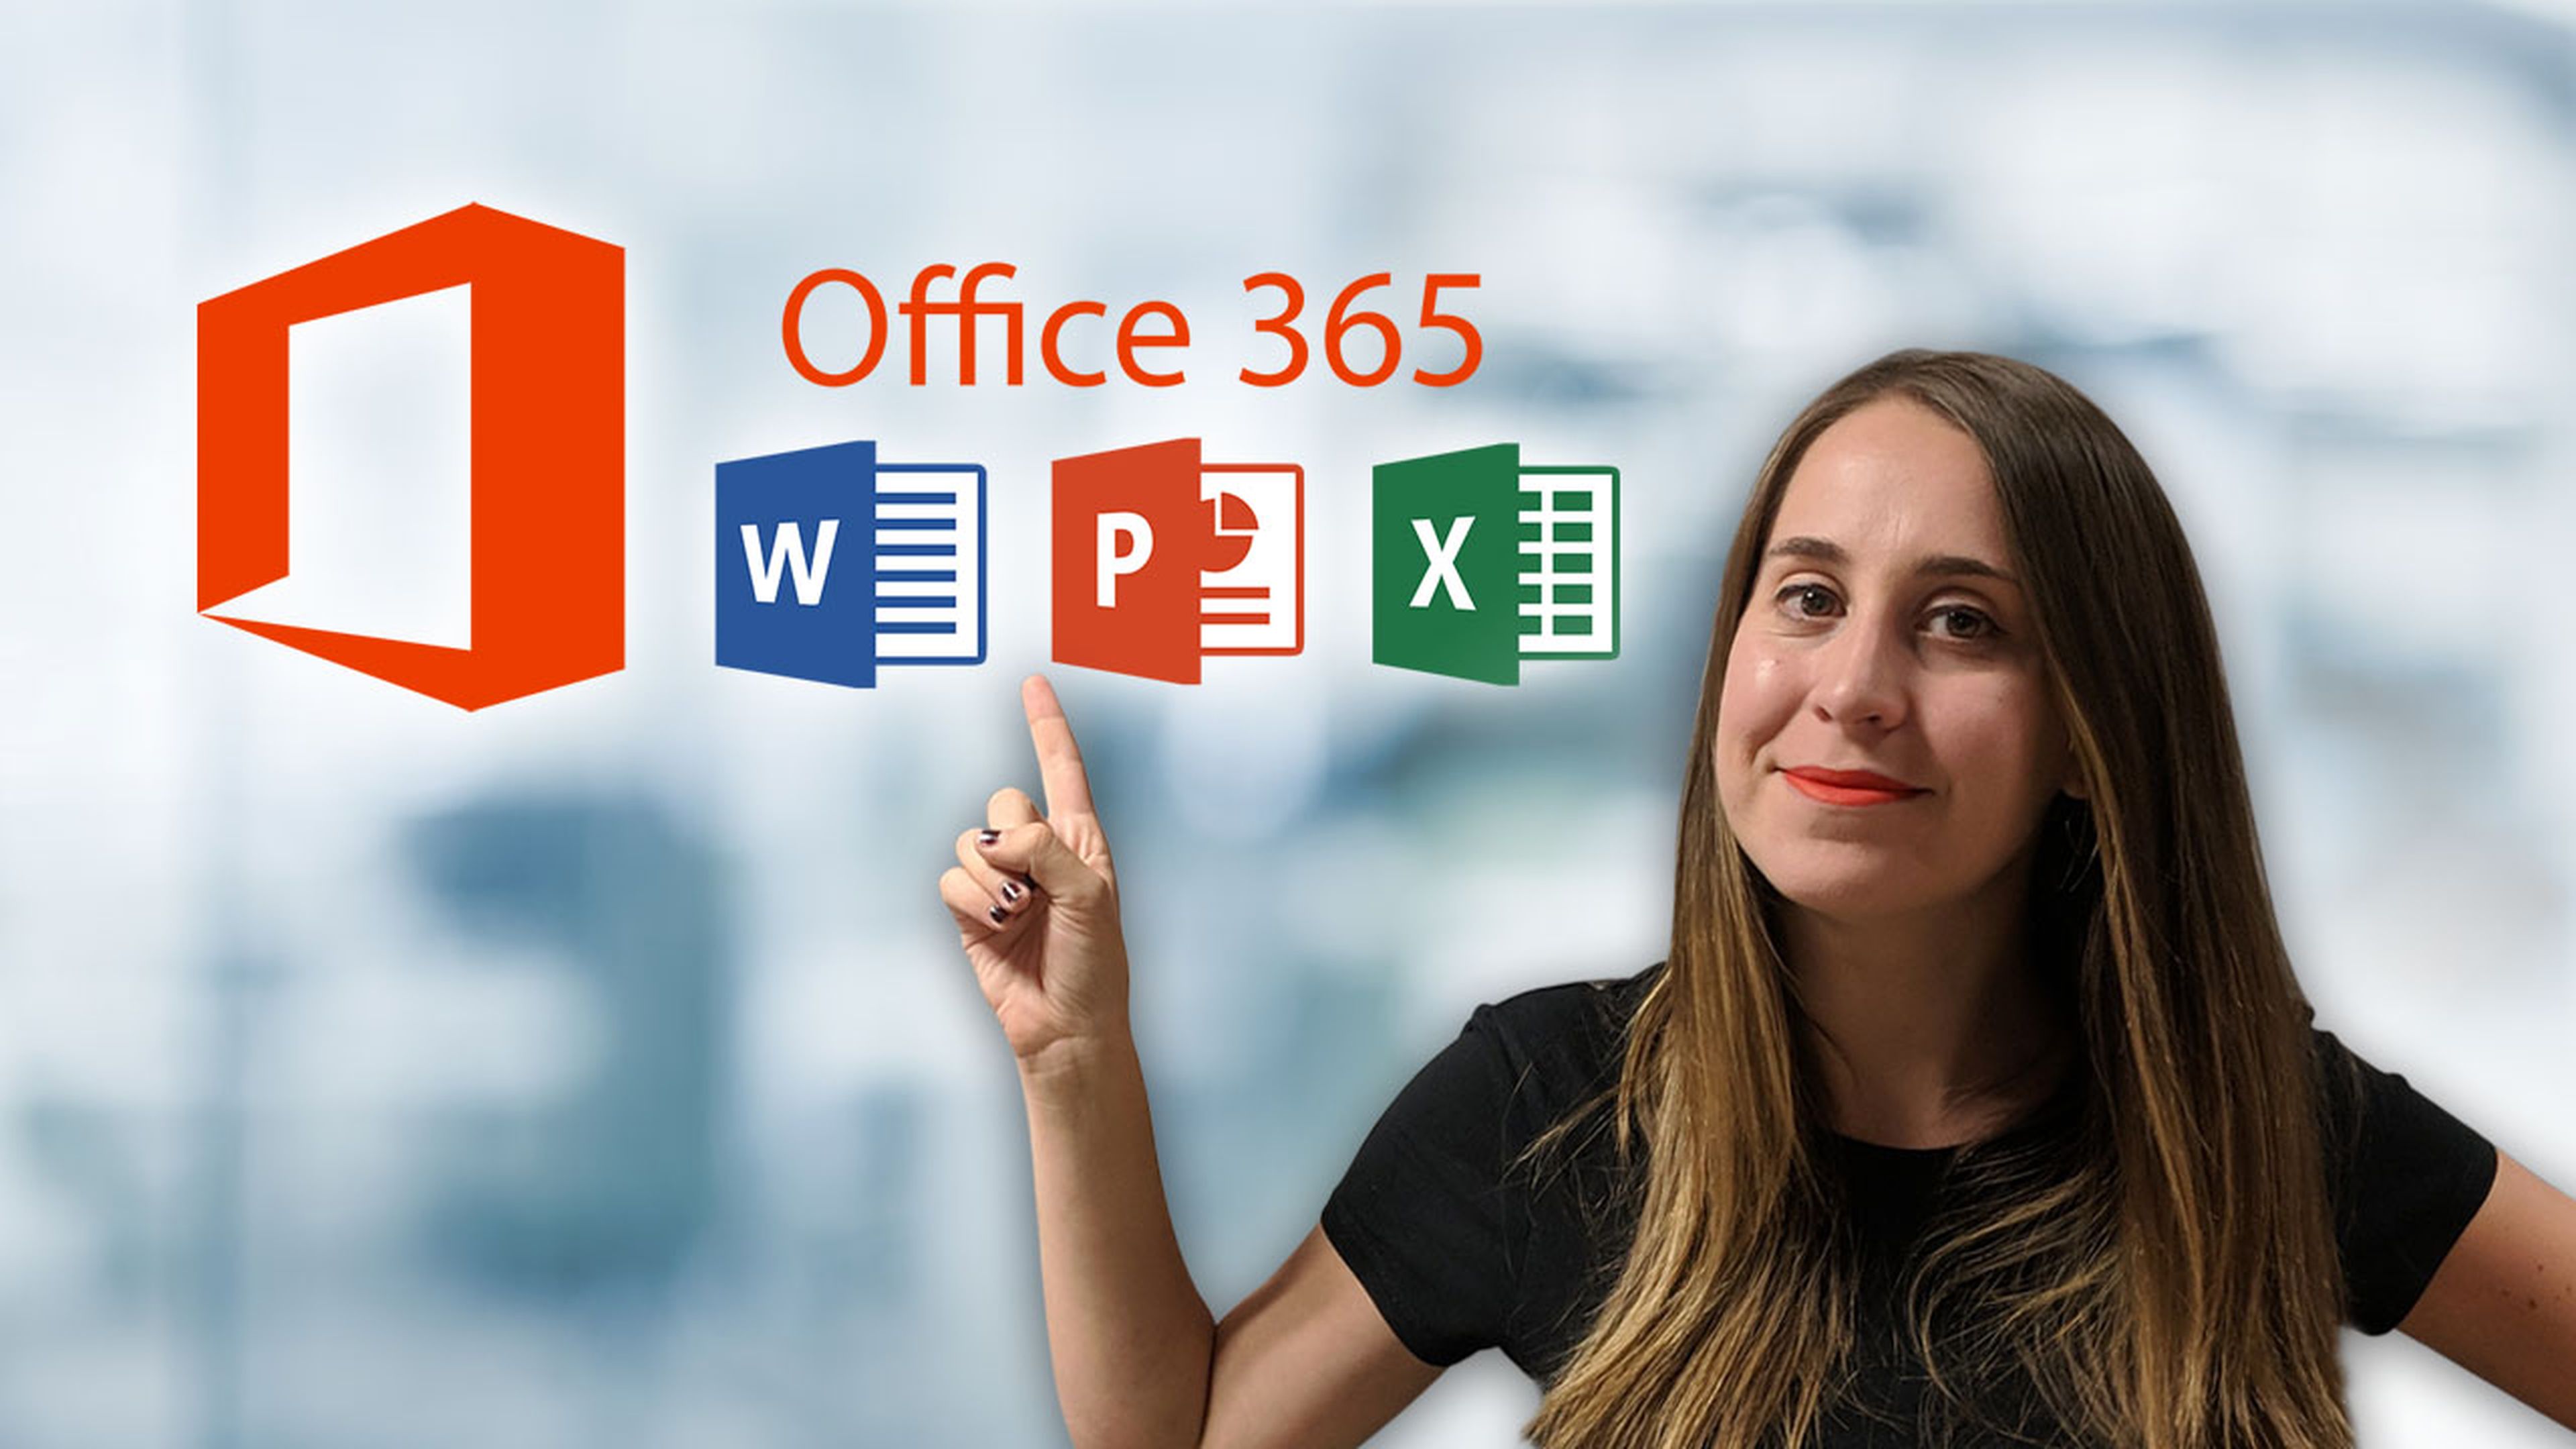 ¿Qué es Office 365?